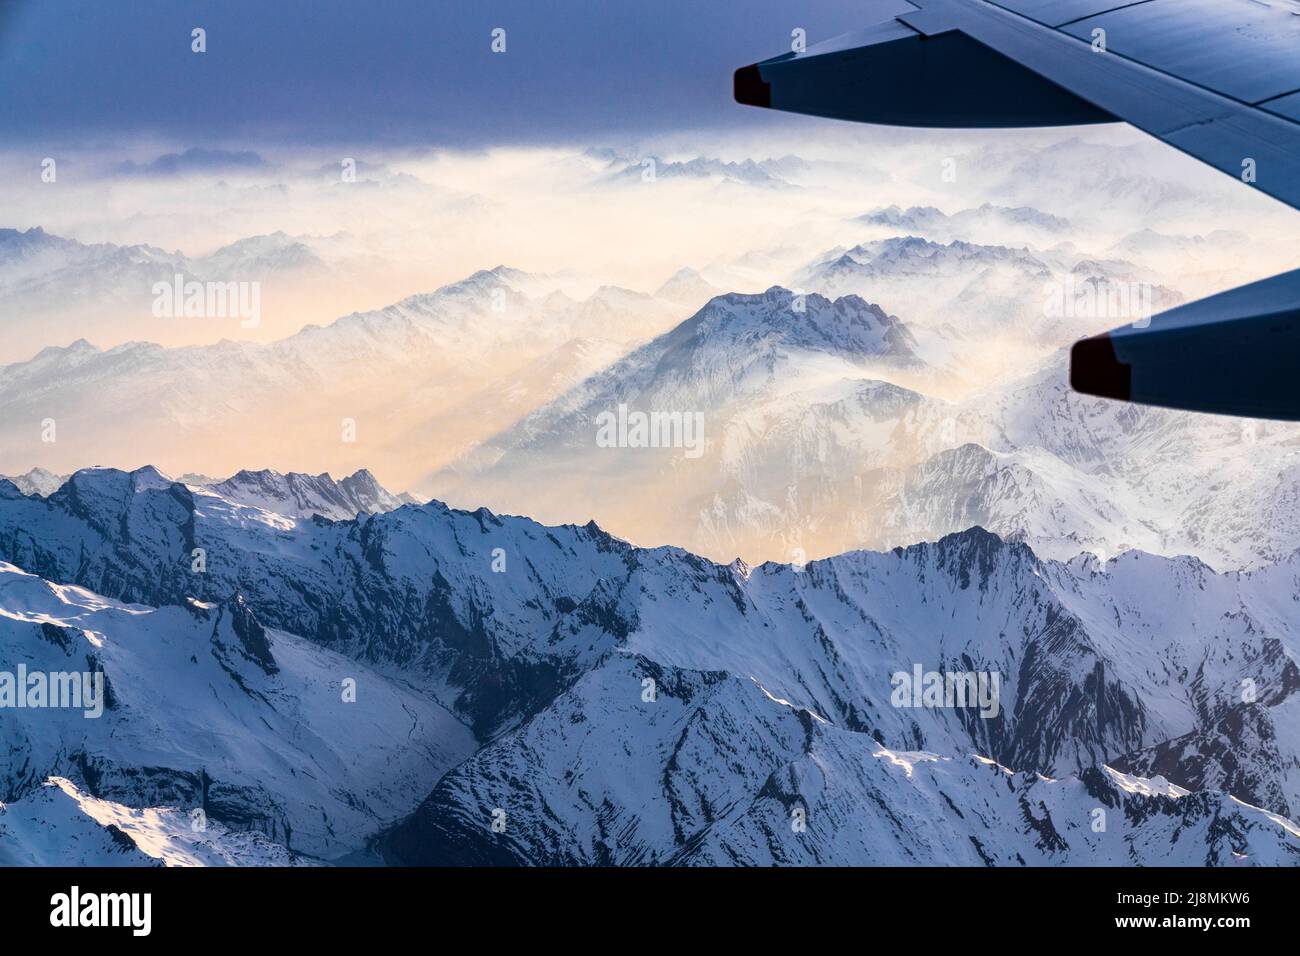 Avion survolant Leponntine et Alpes du Tessin couvert de neige au cours d'un coucher de soleil brumeux, canton de Graubunden, Suisse Banque D'Images